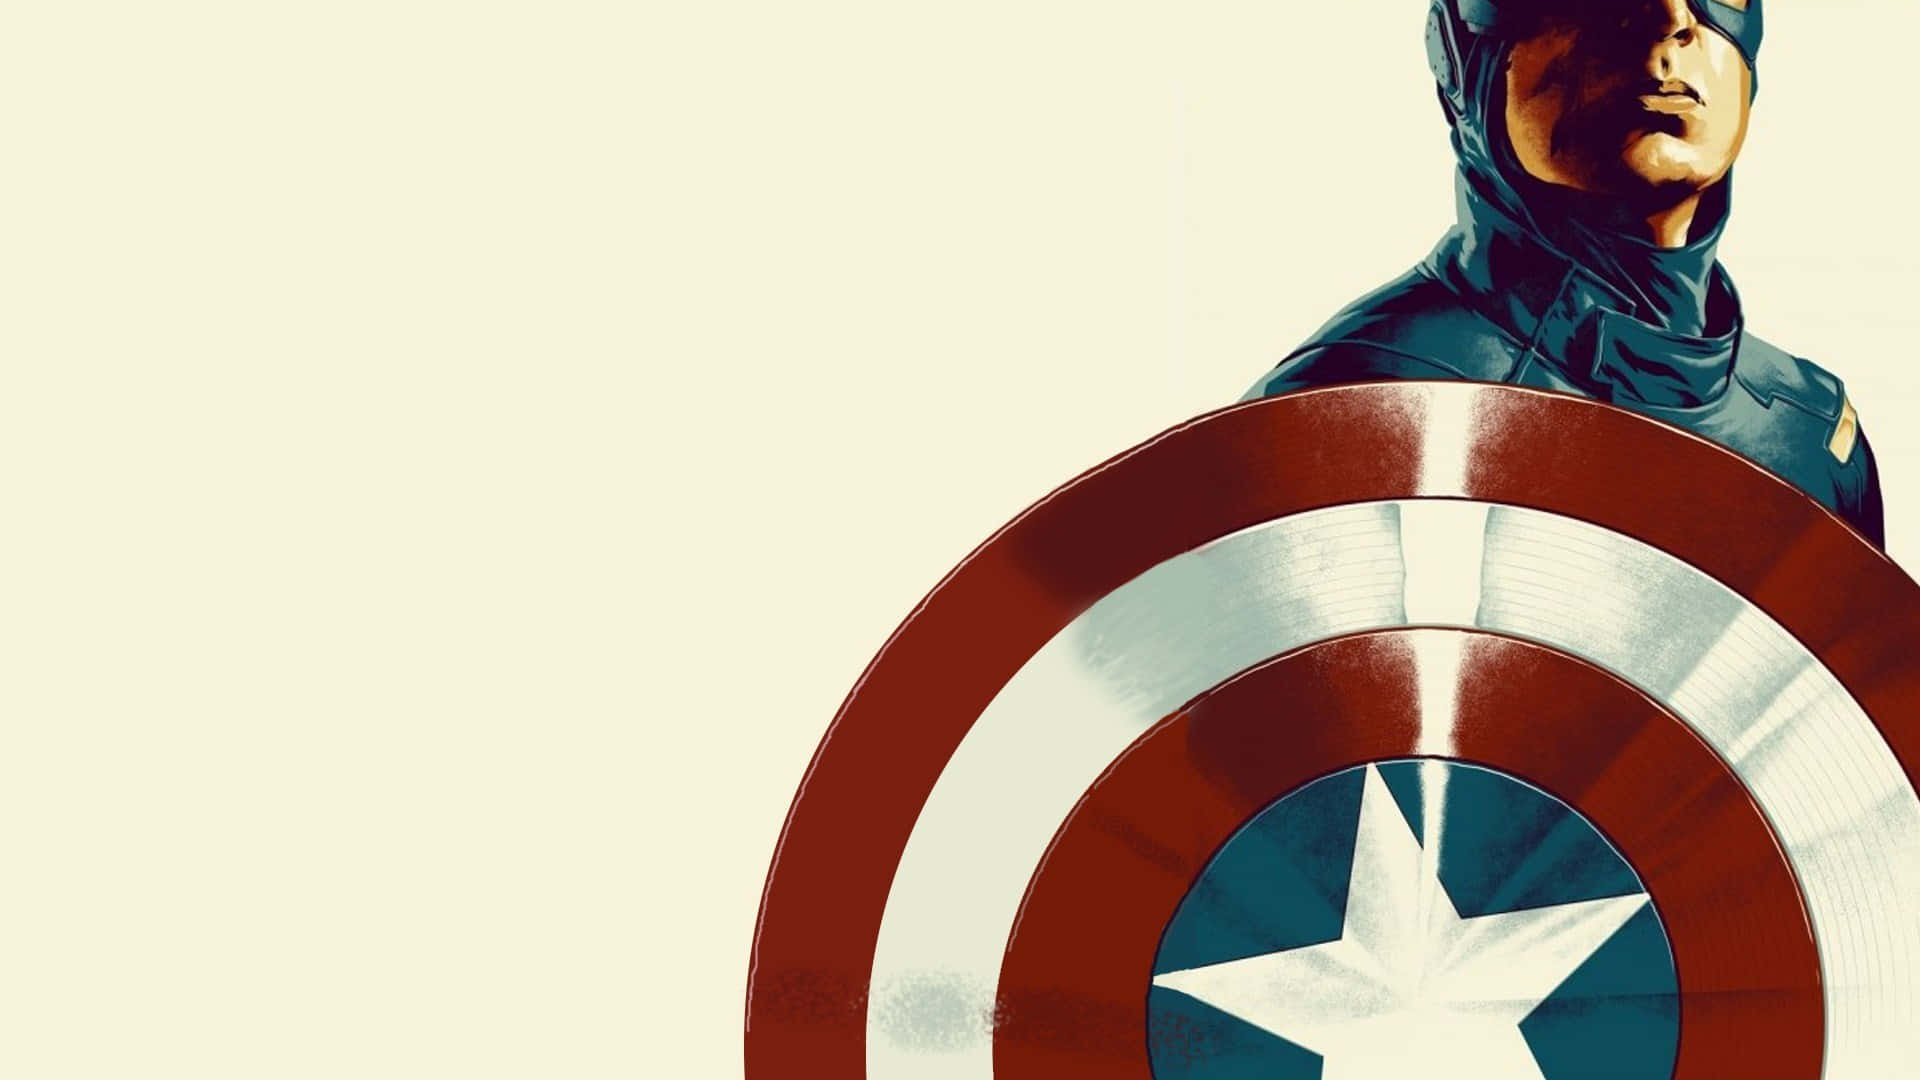 Blistilig Med Marvels Legendariska Captain America Som Bakgrundsbild På Din Dator Eller Mobiltelefon.